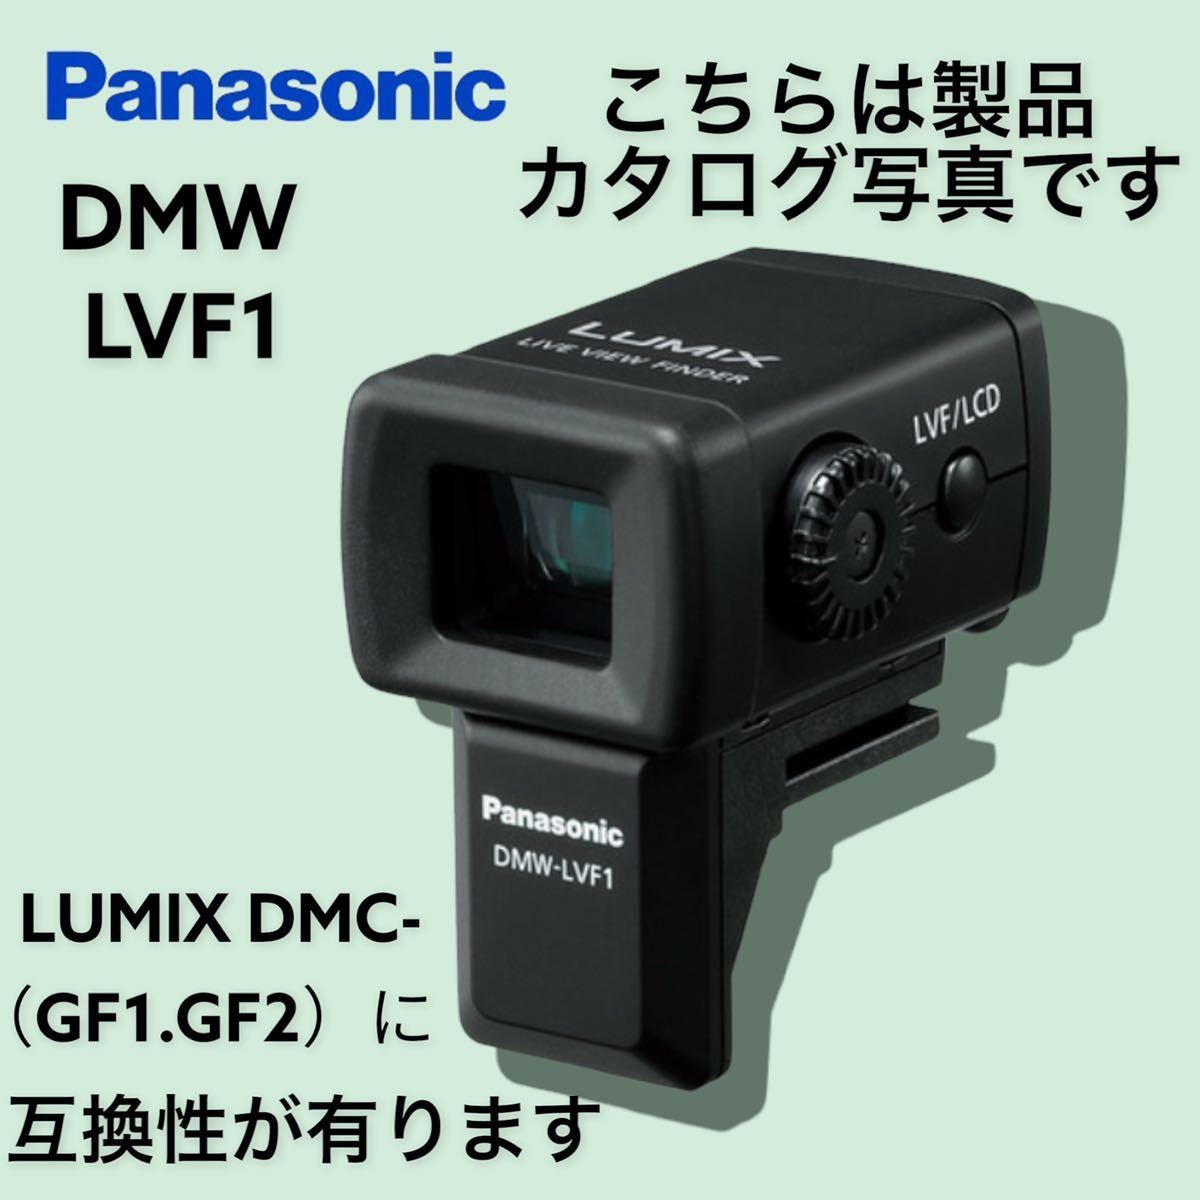 CE115/Panasonic パナソニック LUMIX DMC-GF1 ファインダー DMW-LVF1 レンズ G ARIO  1:3.5-5.6/14-45 ASPH. 52 MEGA デジタルカメラ